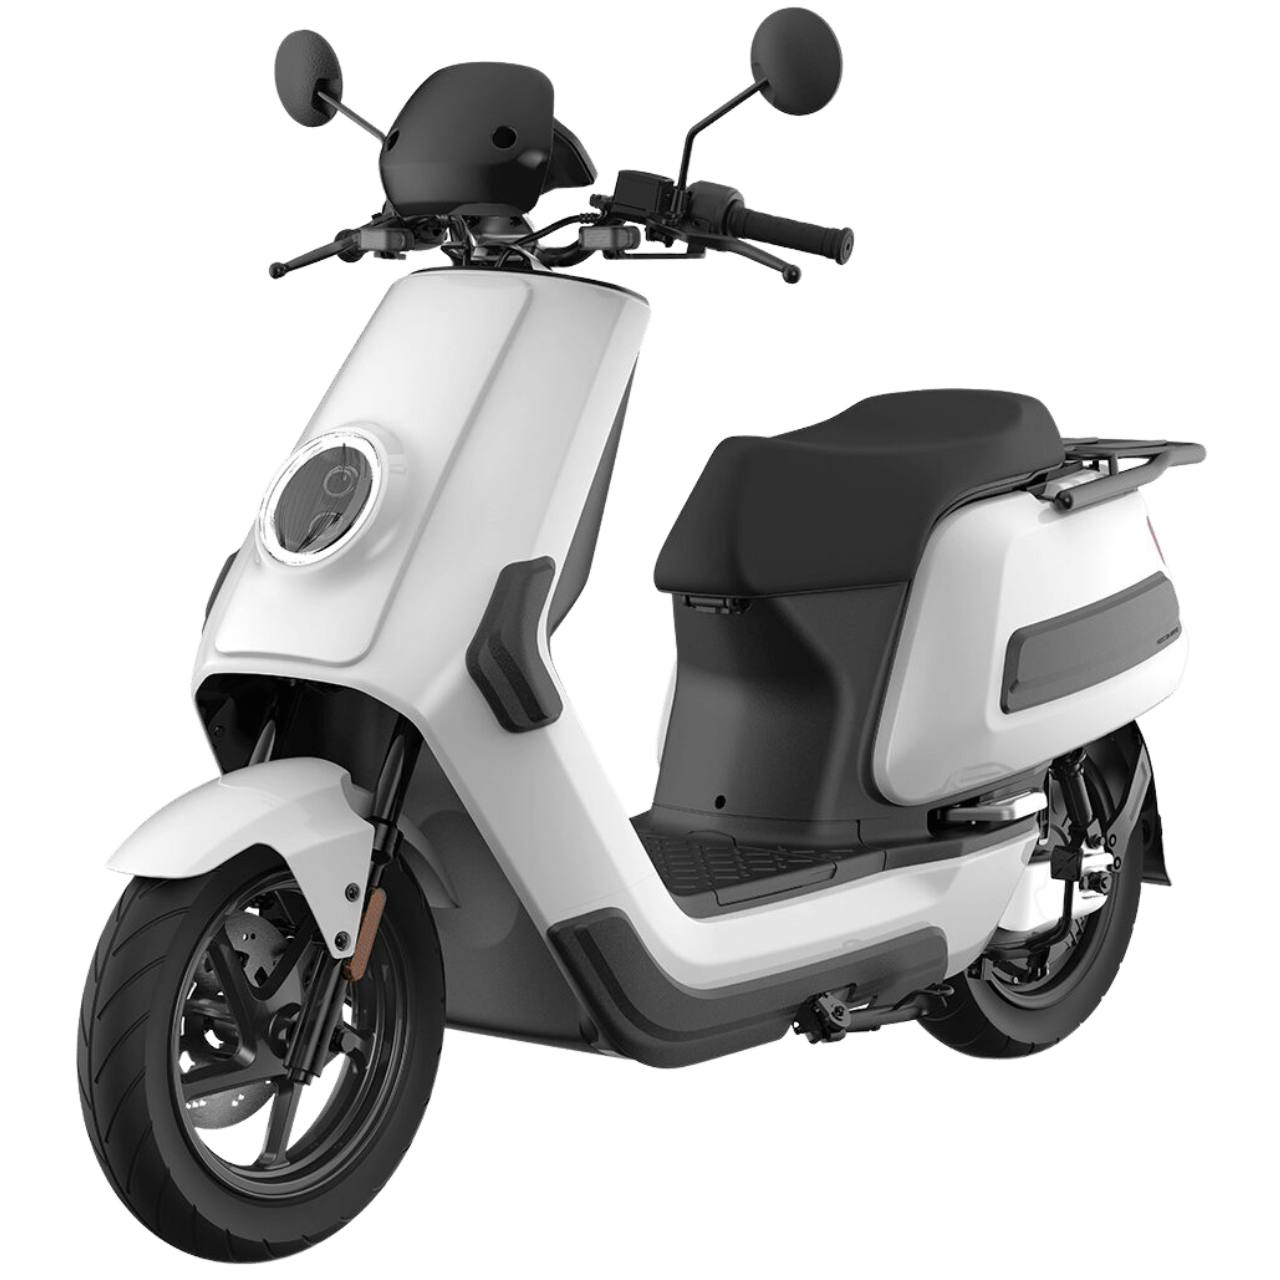 eccity cargo3 : scooter électrique pour les professionnels